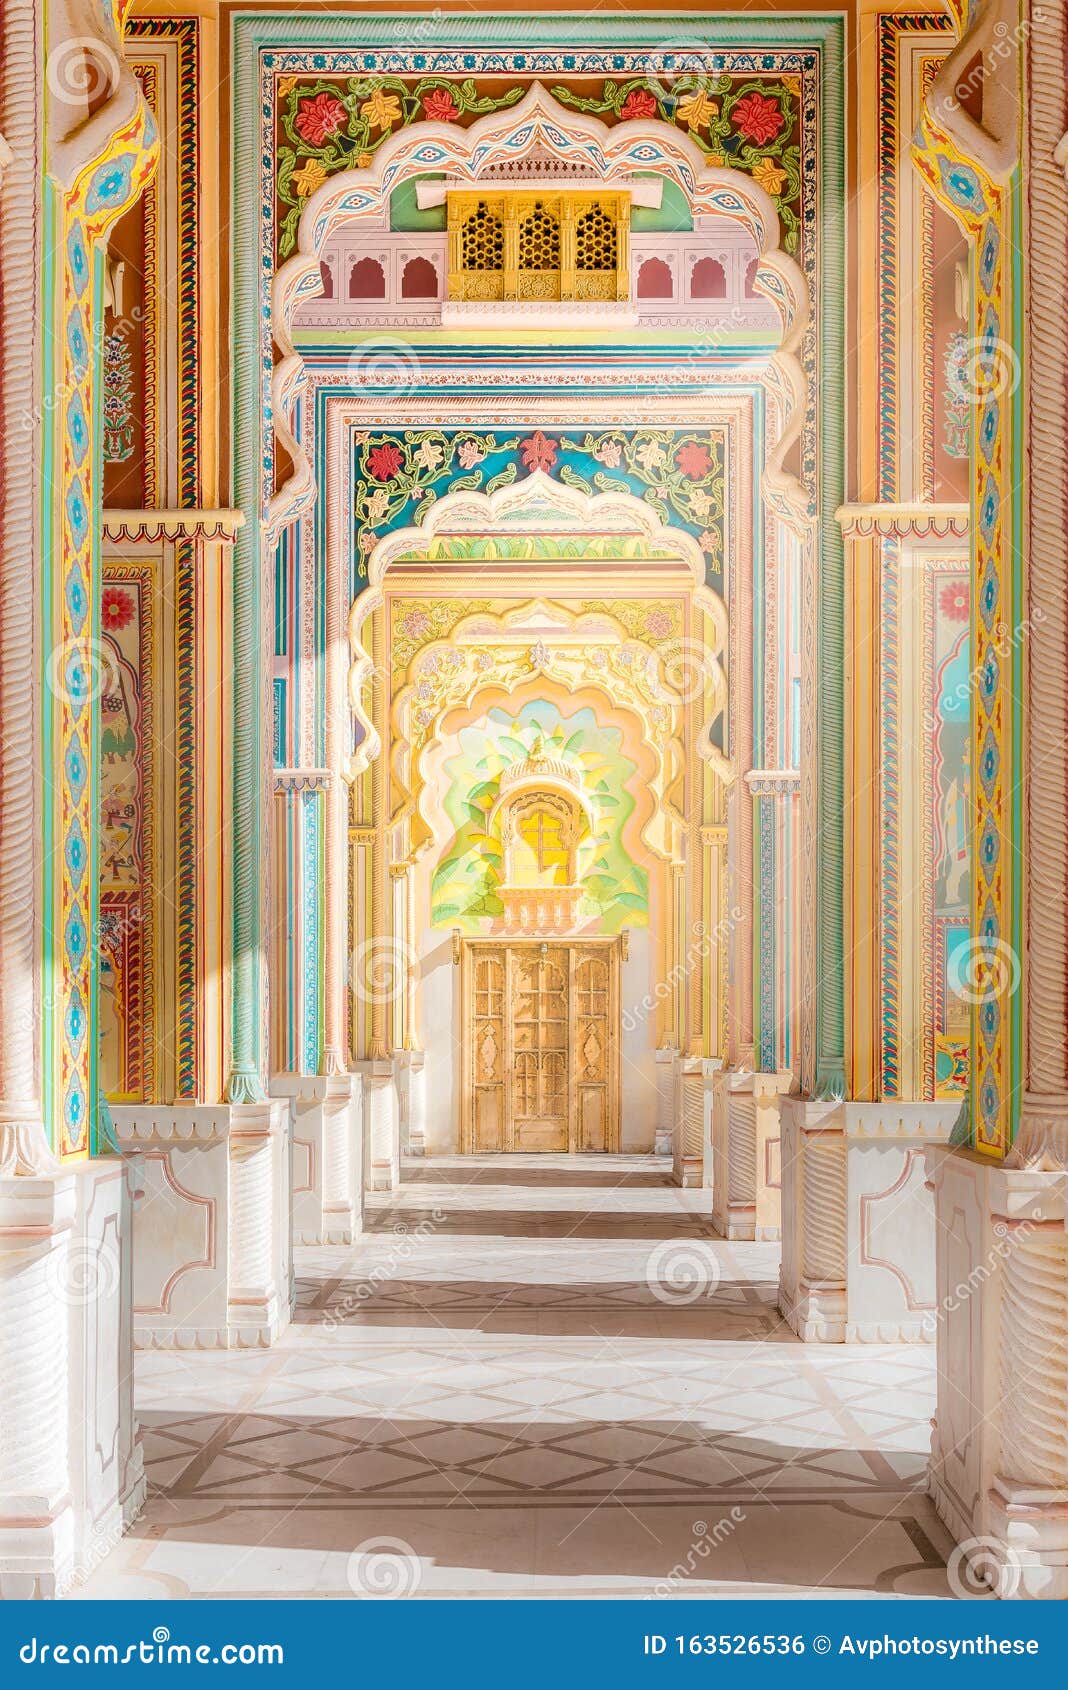 patrika gate. the ninth gate of jaipur locate at jawahar circle, jaipur, rajasthan, india.